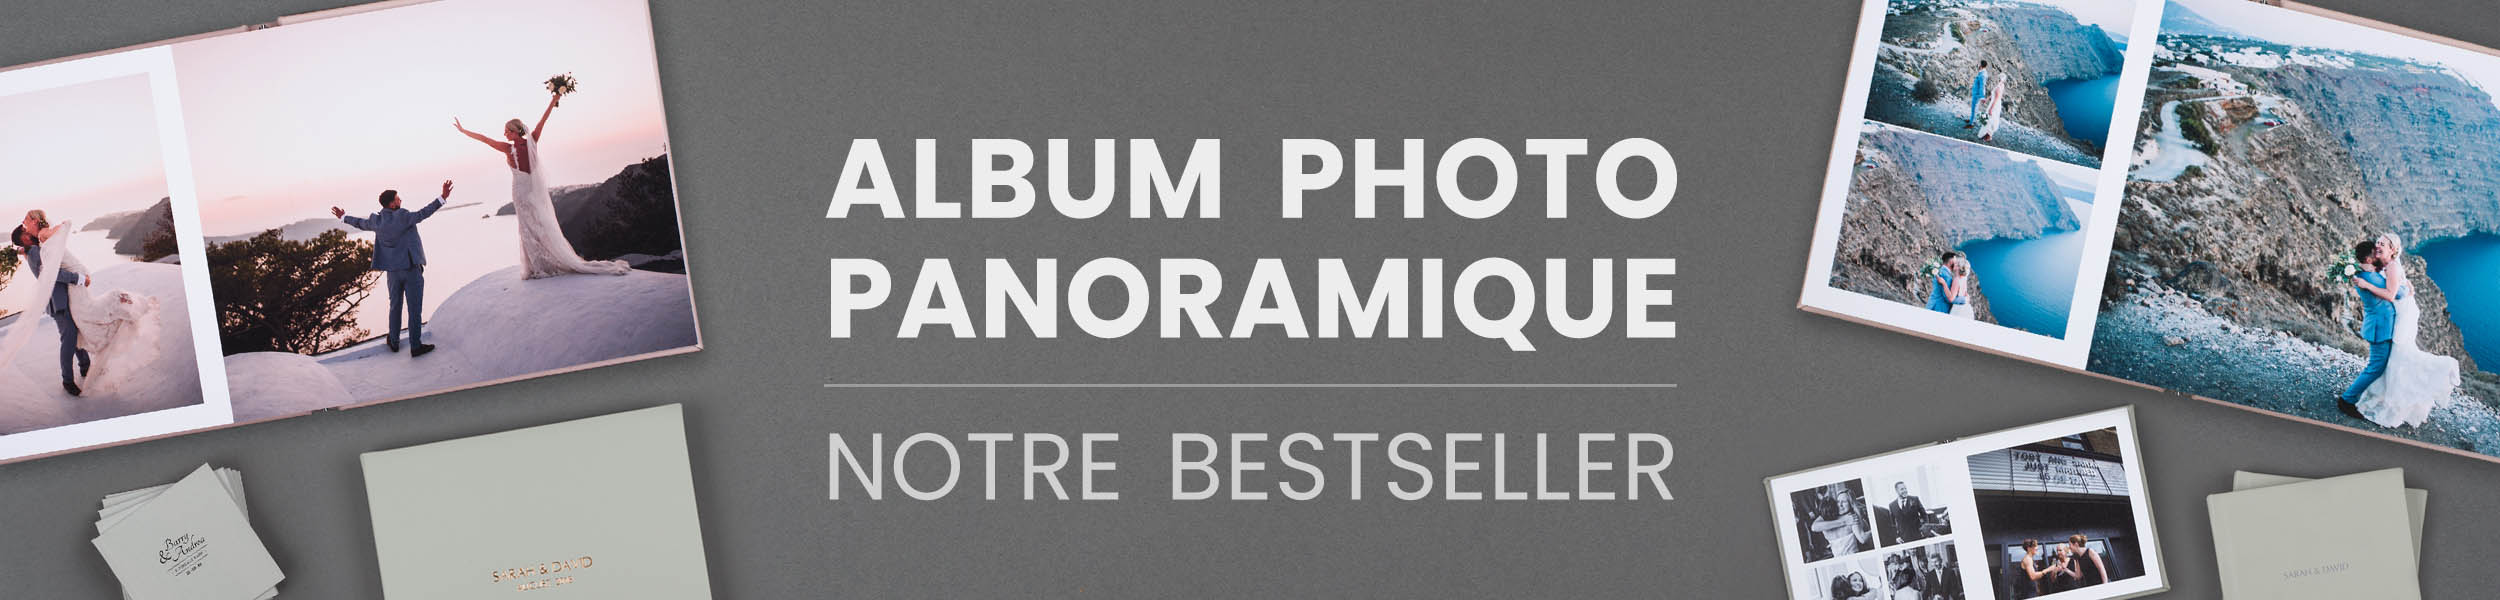 Album Photo Panoramique